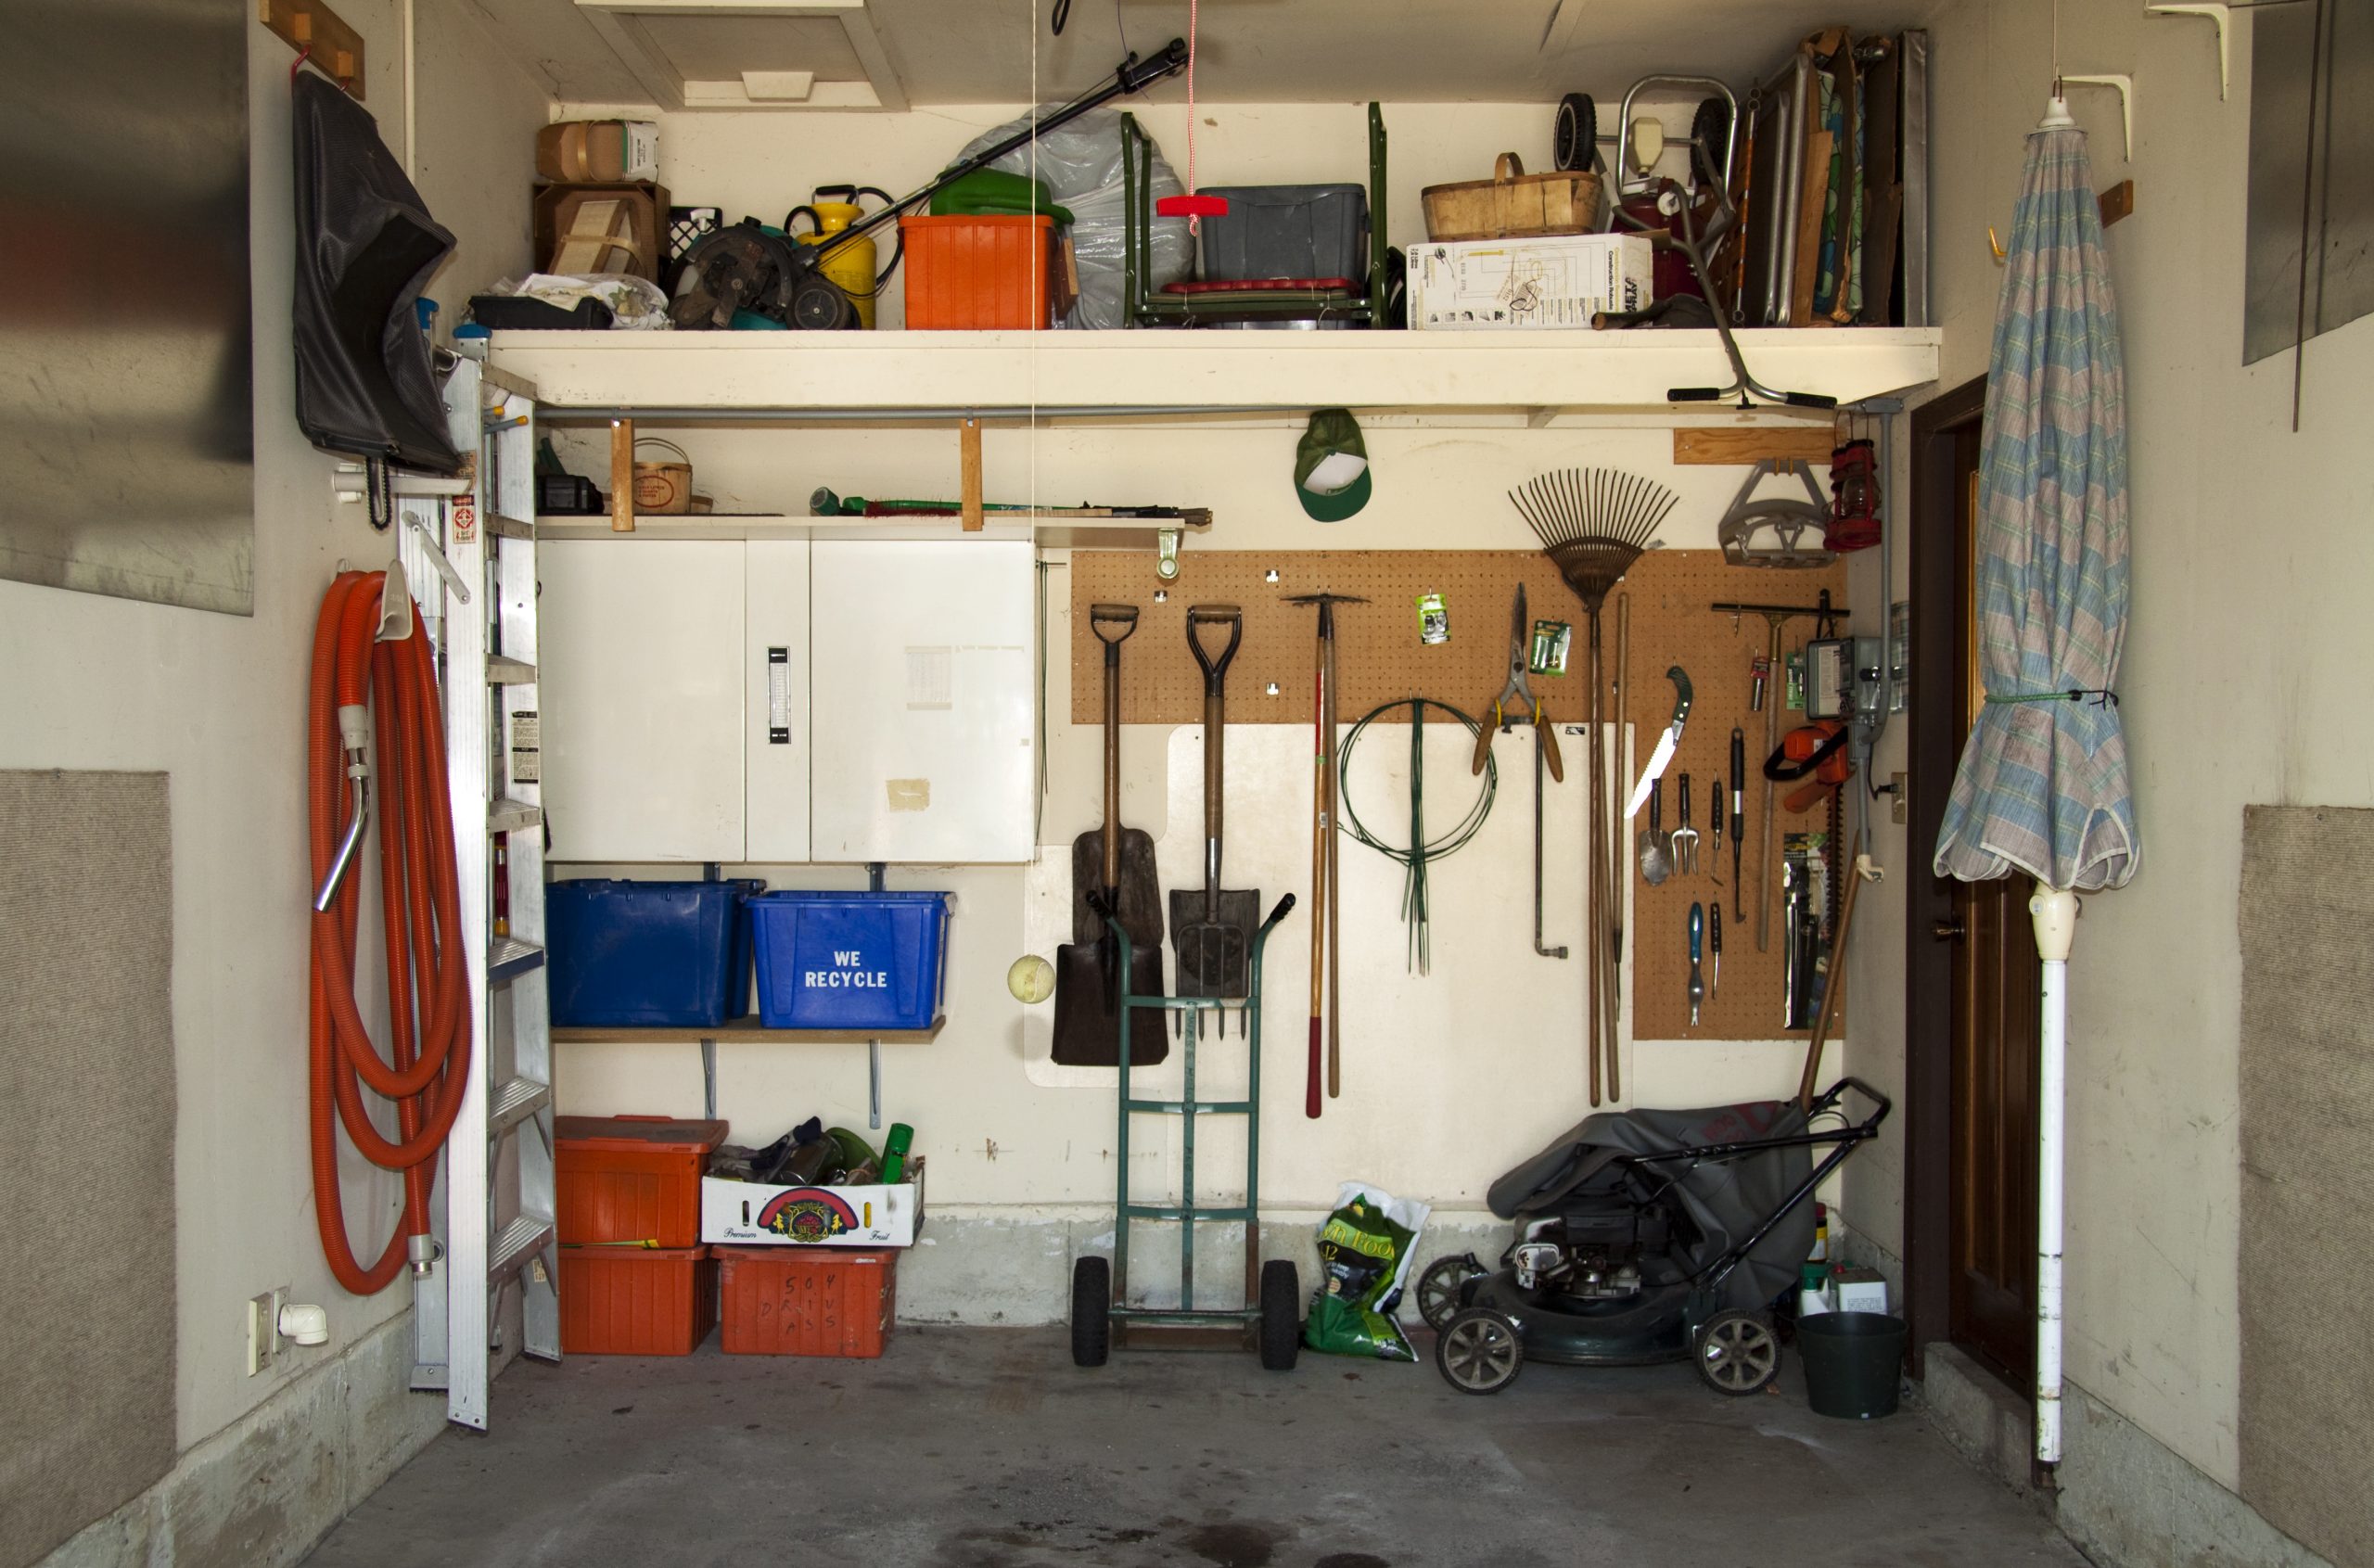 An organized garage interior